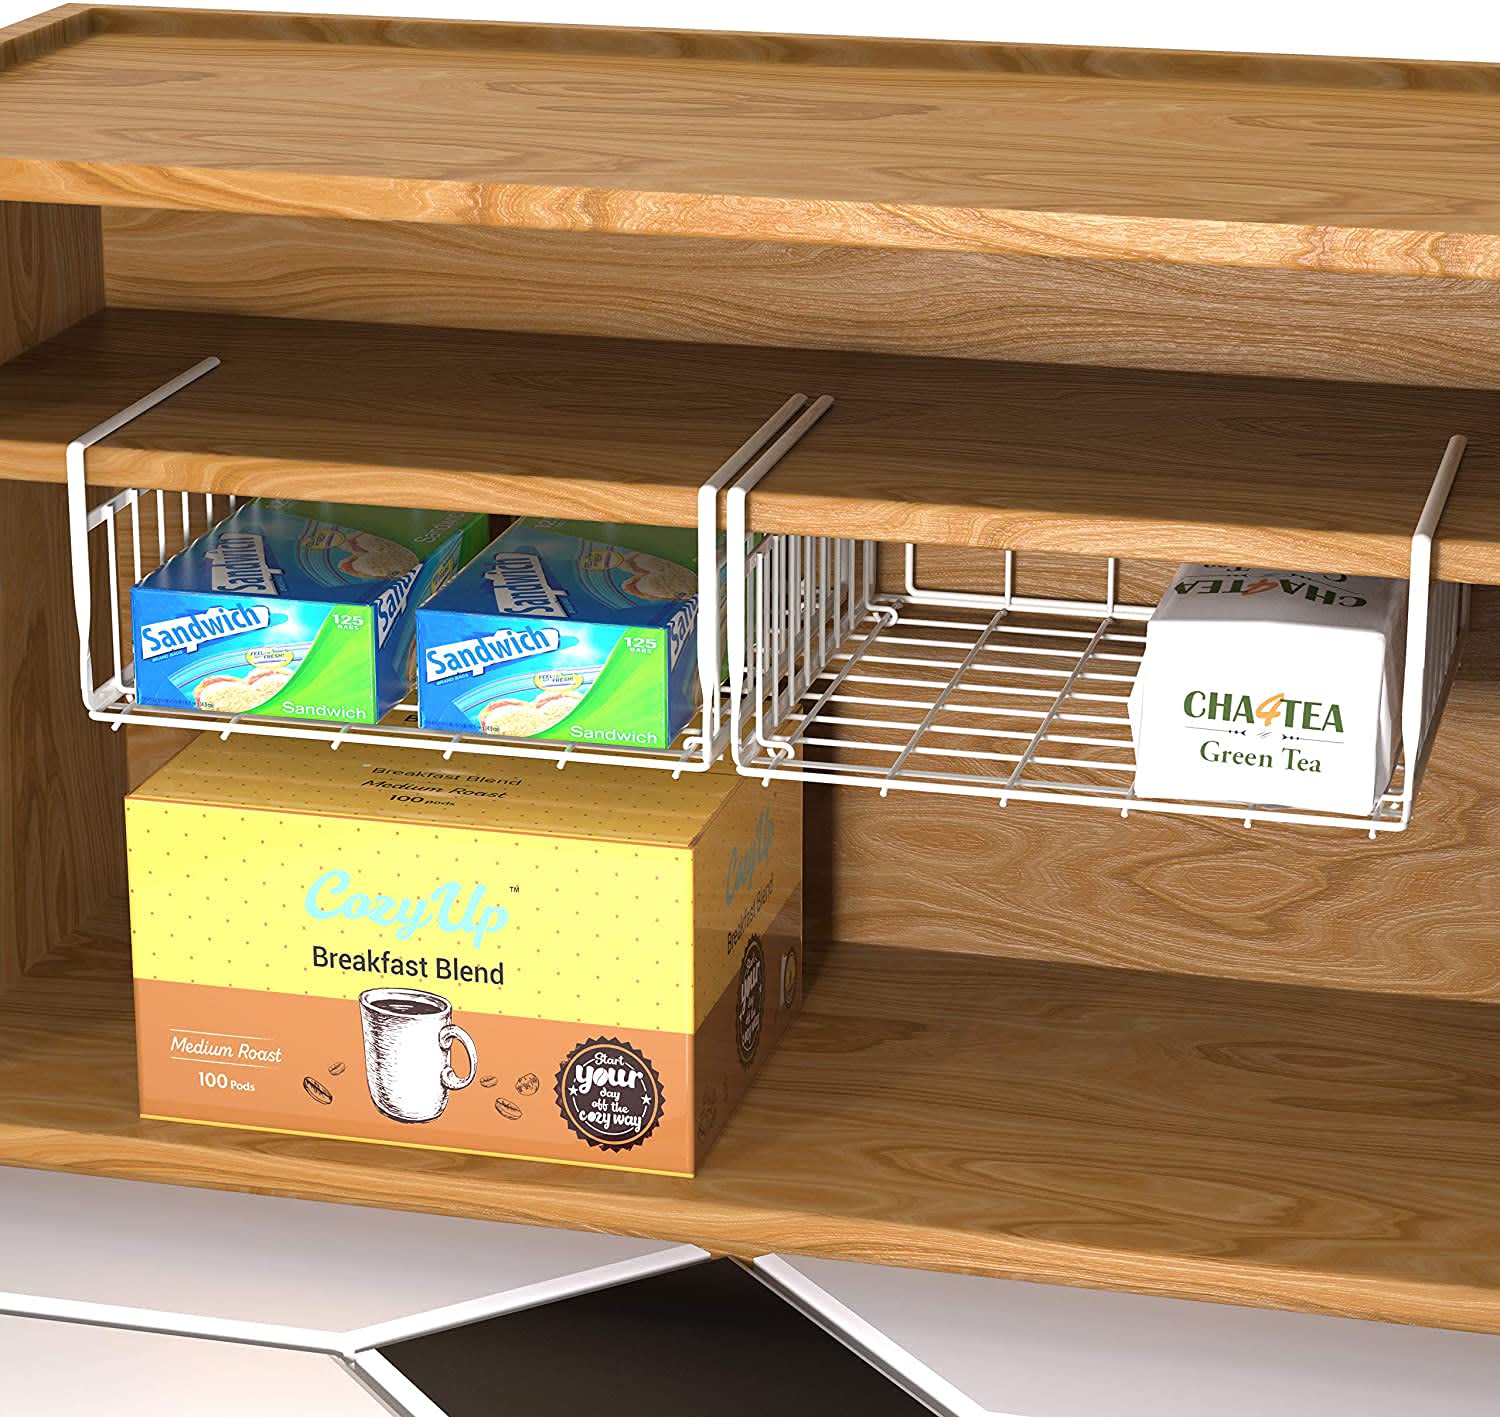 Smart Design Undershelf Storage Basket - Small - 12 x 5.5 inch